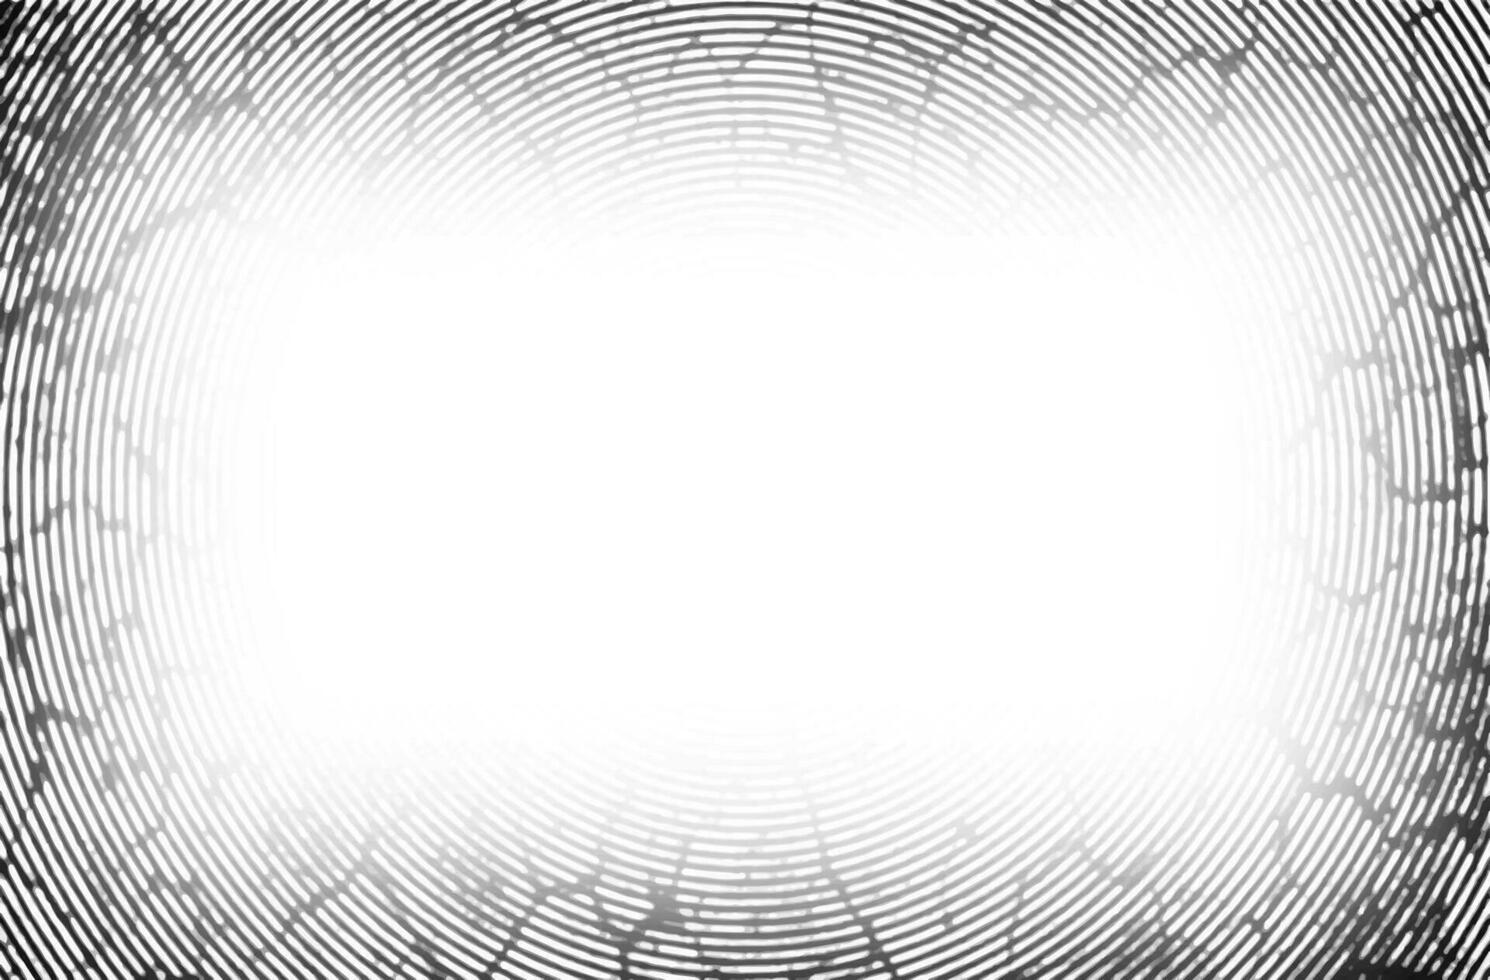 un negro y blanco imagen de un huella dactilar grunge taladrador marco vector, degradado bandera circulo textura frecuencia, antecedentes bandera resumen cuadrado modelo circulo marco vector